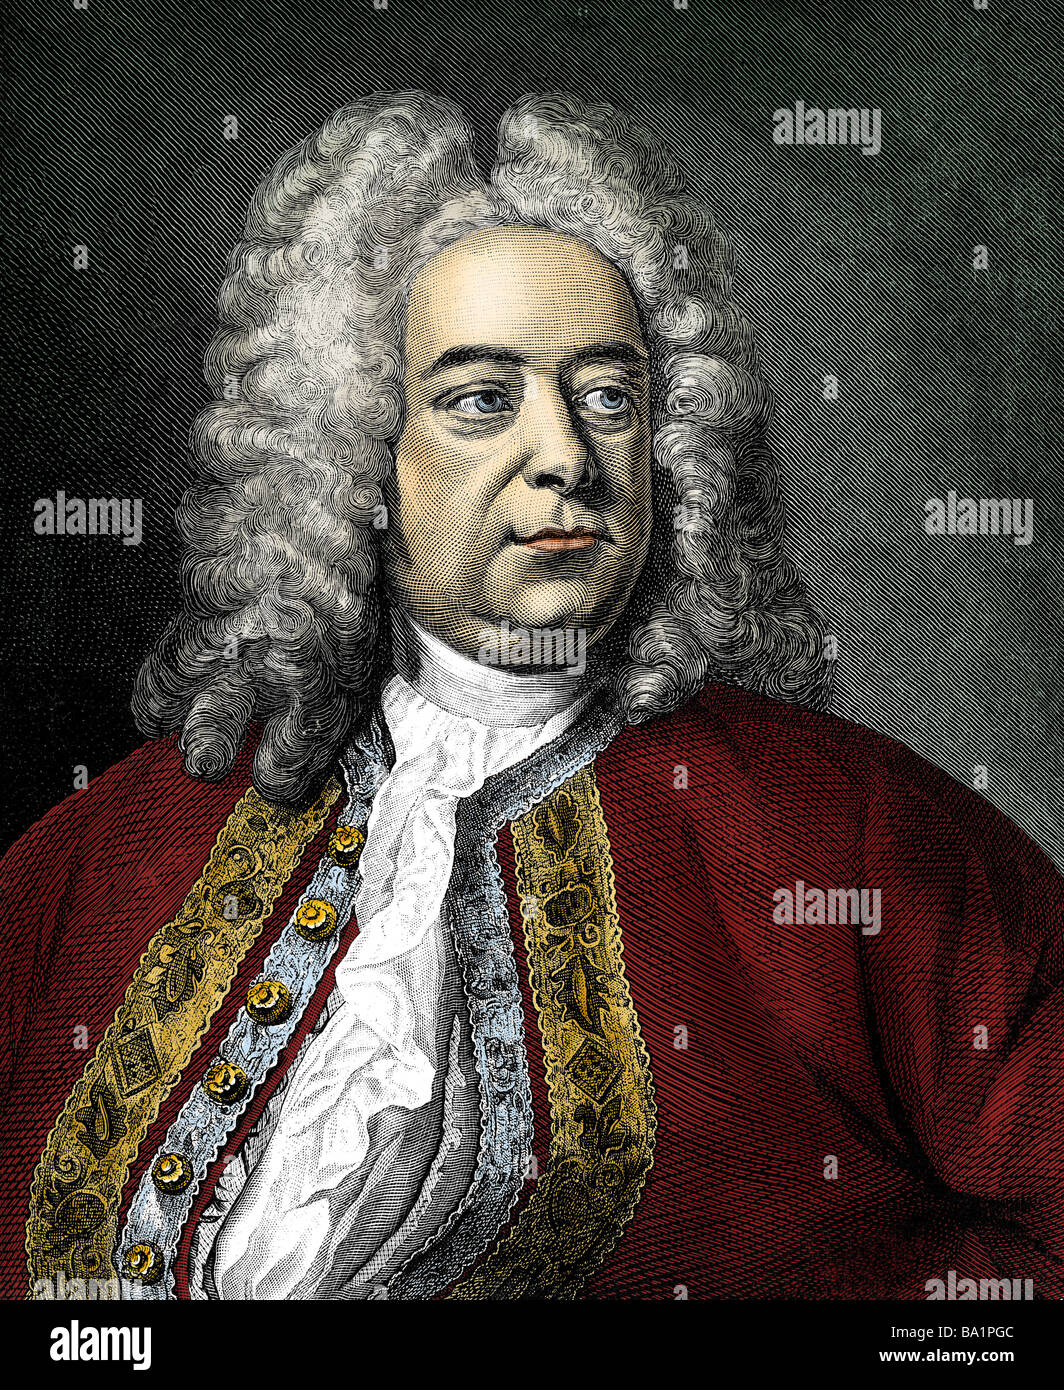 George Frederic Handel, 23.2.1685 - 14.4.1759, compositeur allemand, portrait, gravure sur cuivre, 18e siècle, plus tard, de couleur mus Banque D'Images